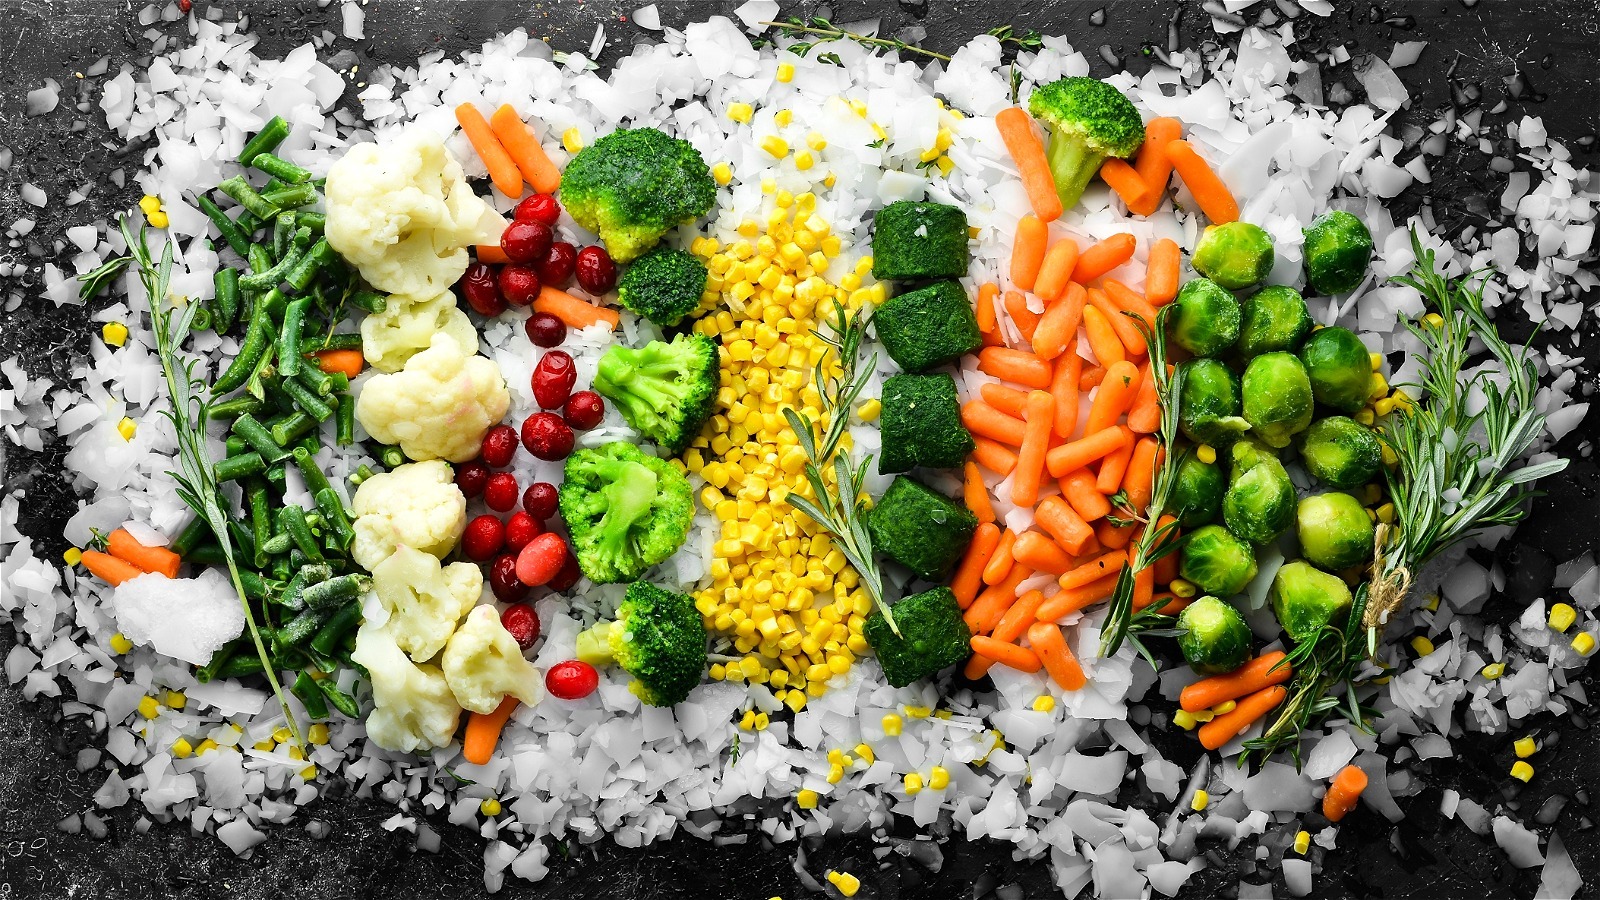 How To Defrost Frozen Vegetables